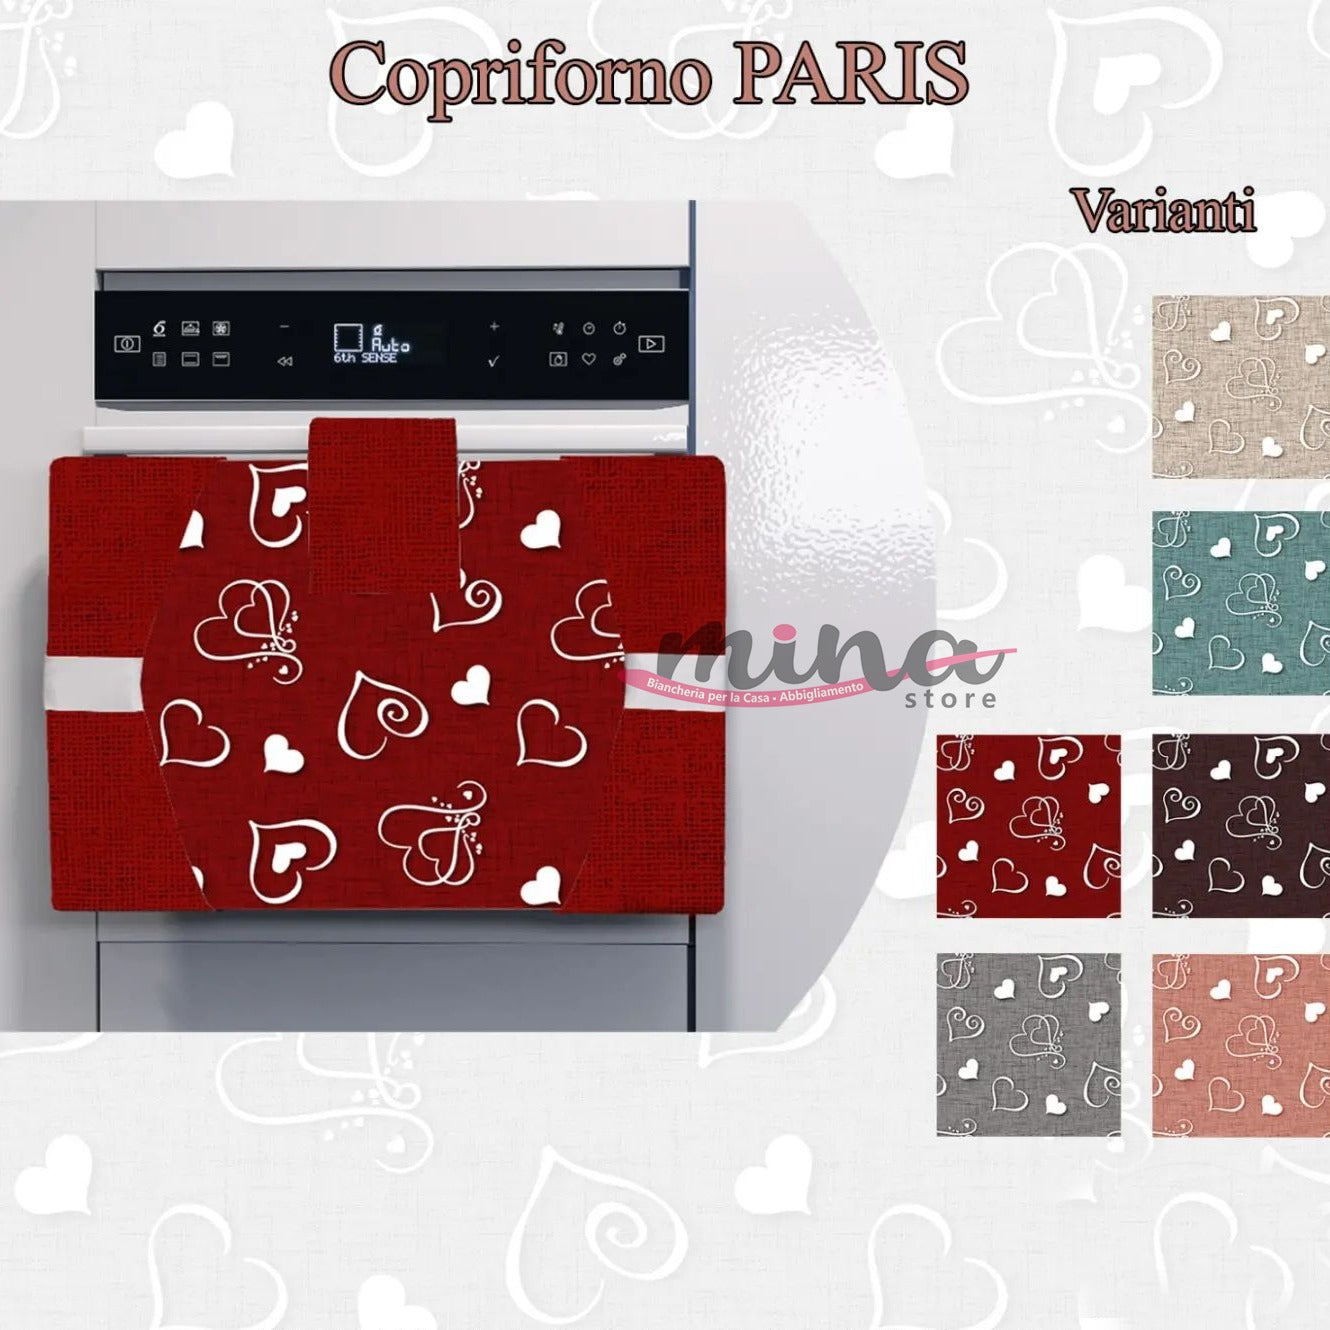 Copriforno imbottito fantasia PARIS cucina copriforno 55cm X 42cm coordinato Made in Italy vari colori 0603